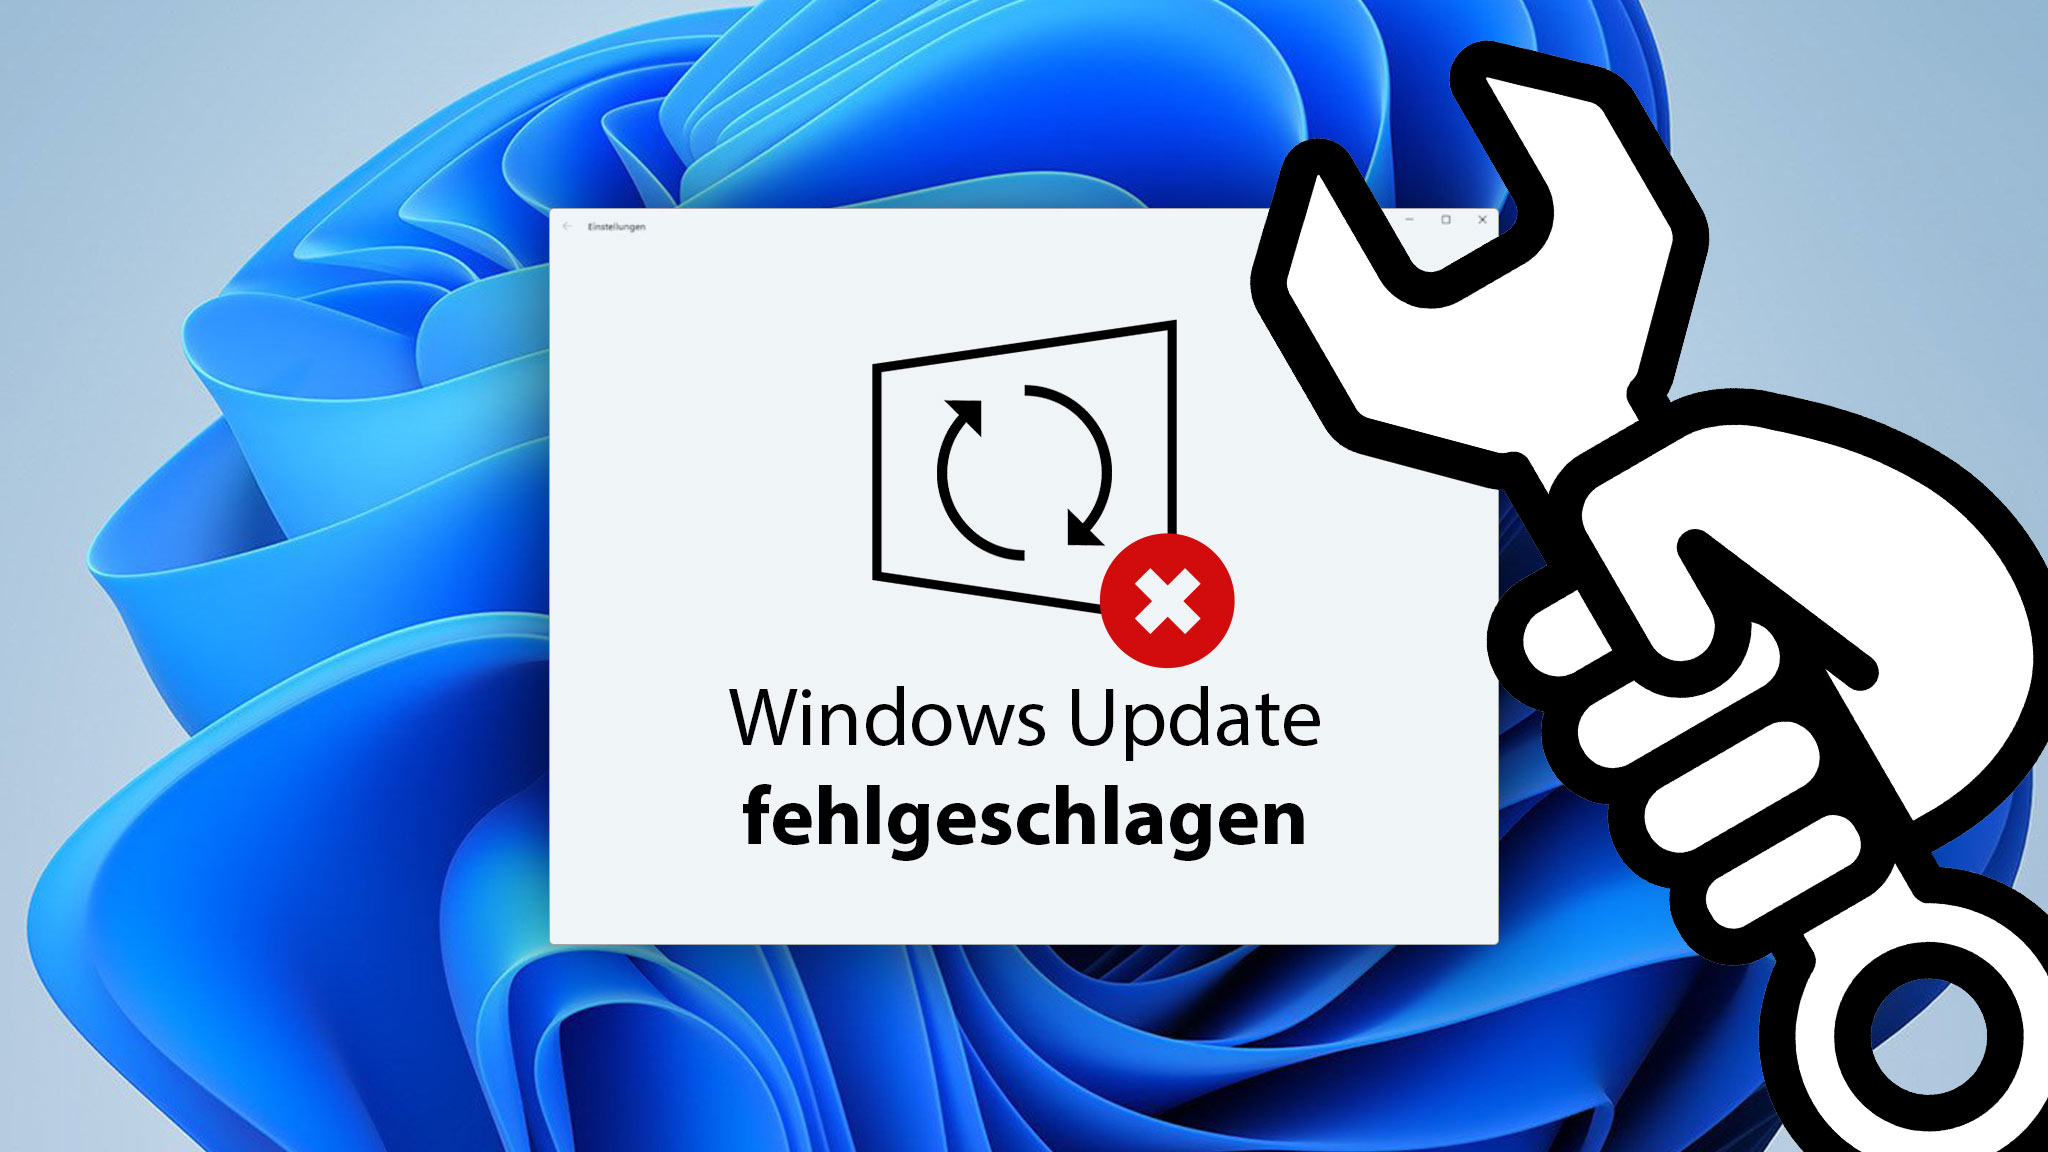 Update-Probleme beheben: Tipps und Tricks
Systemwiederherstellung nach Windows-Update